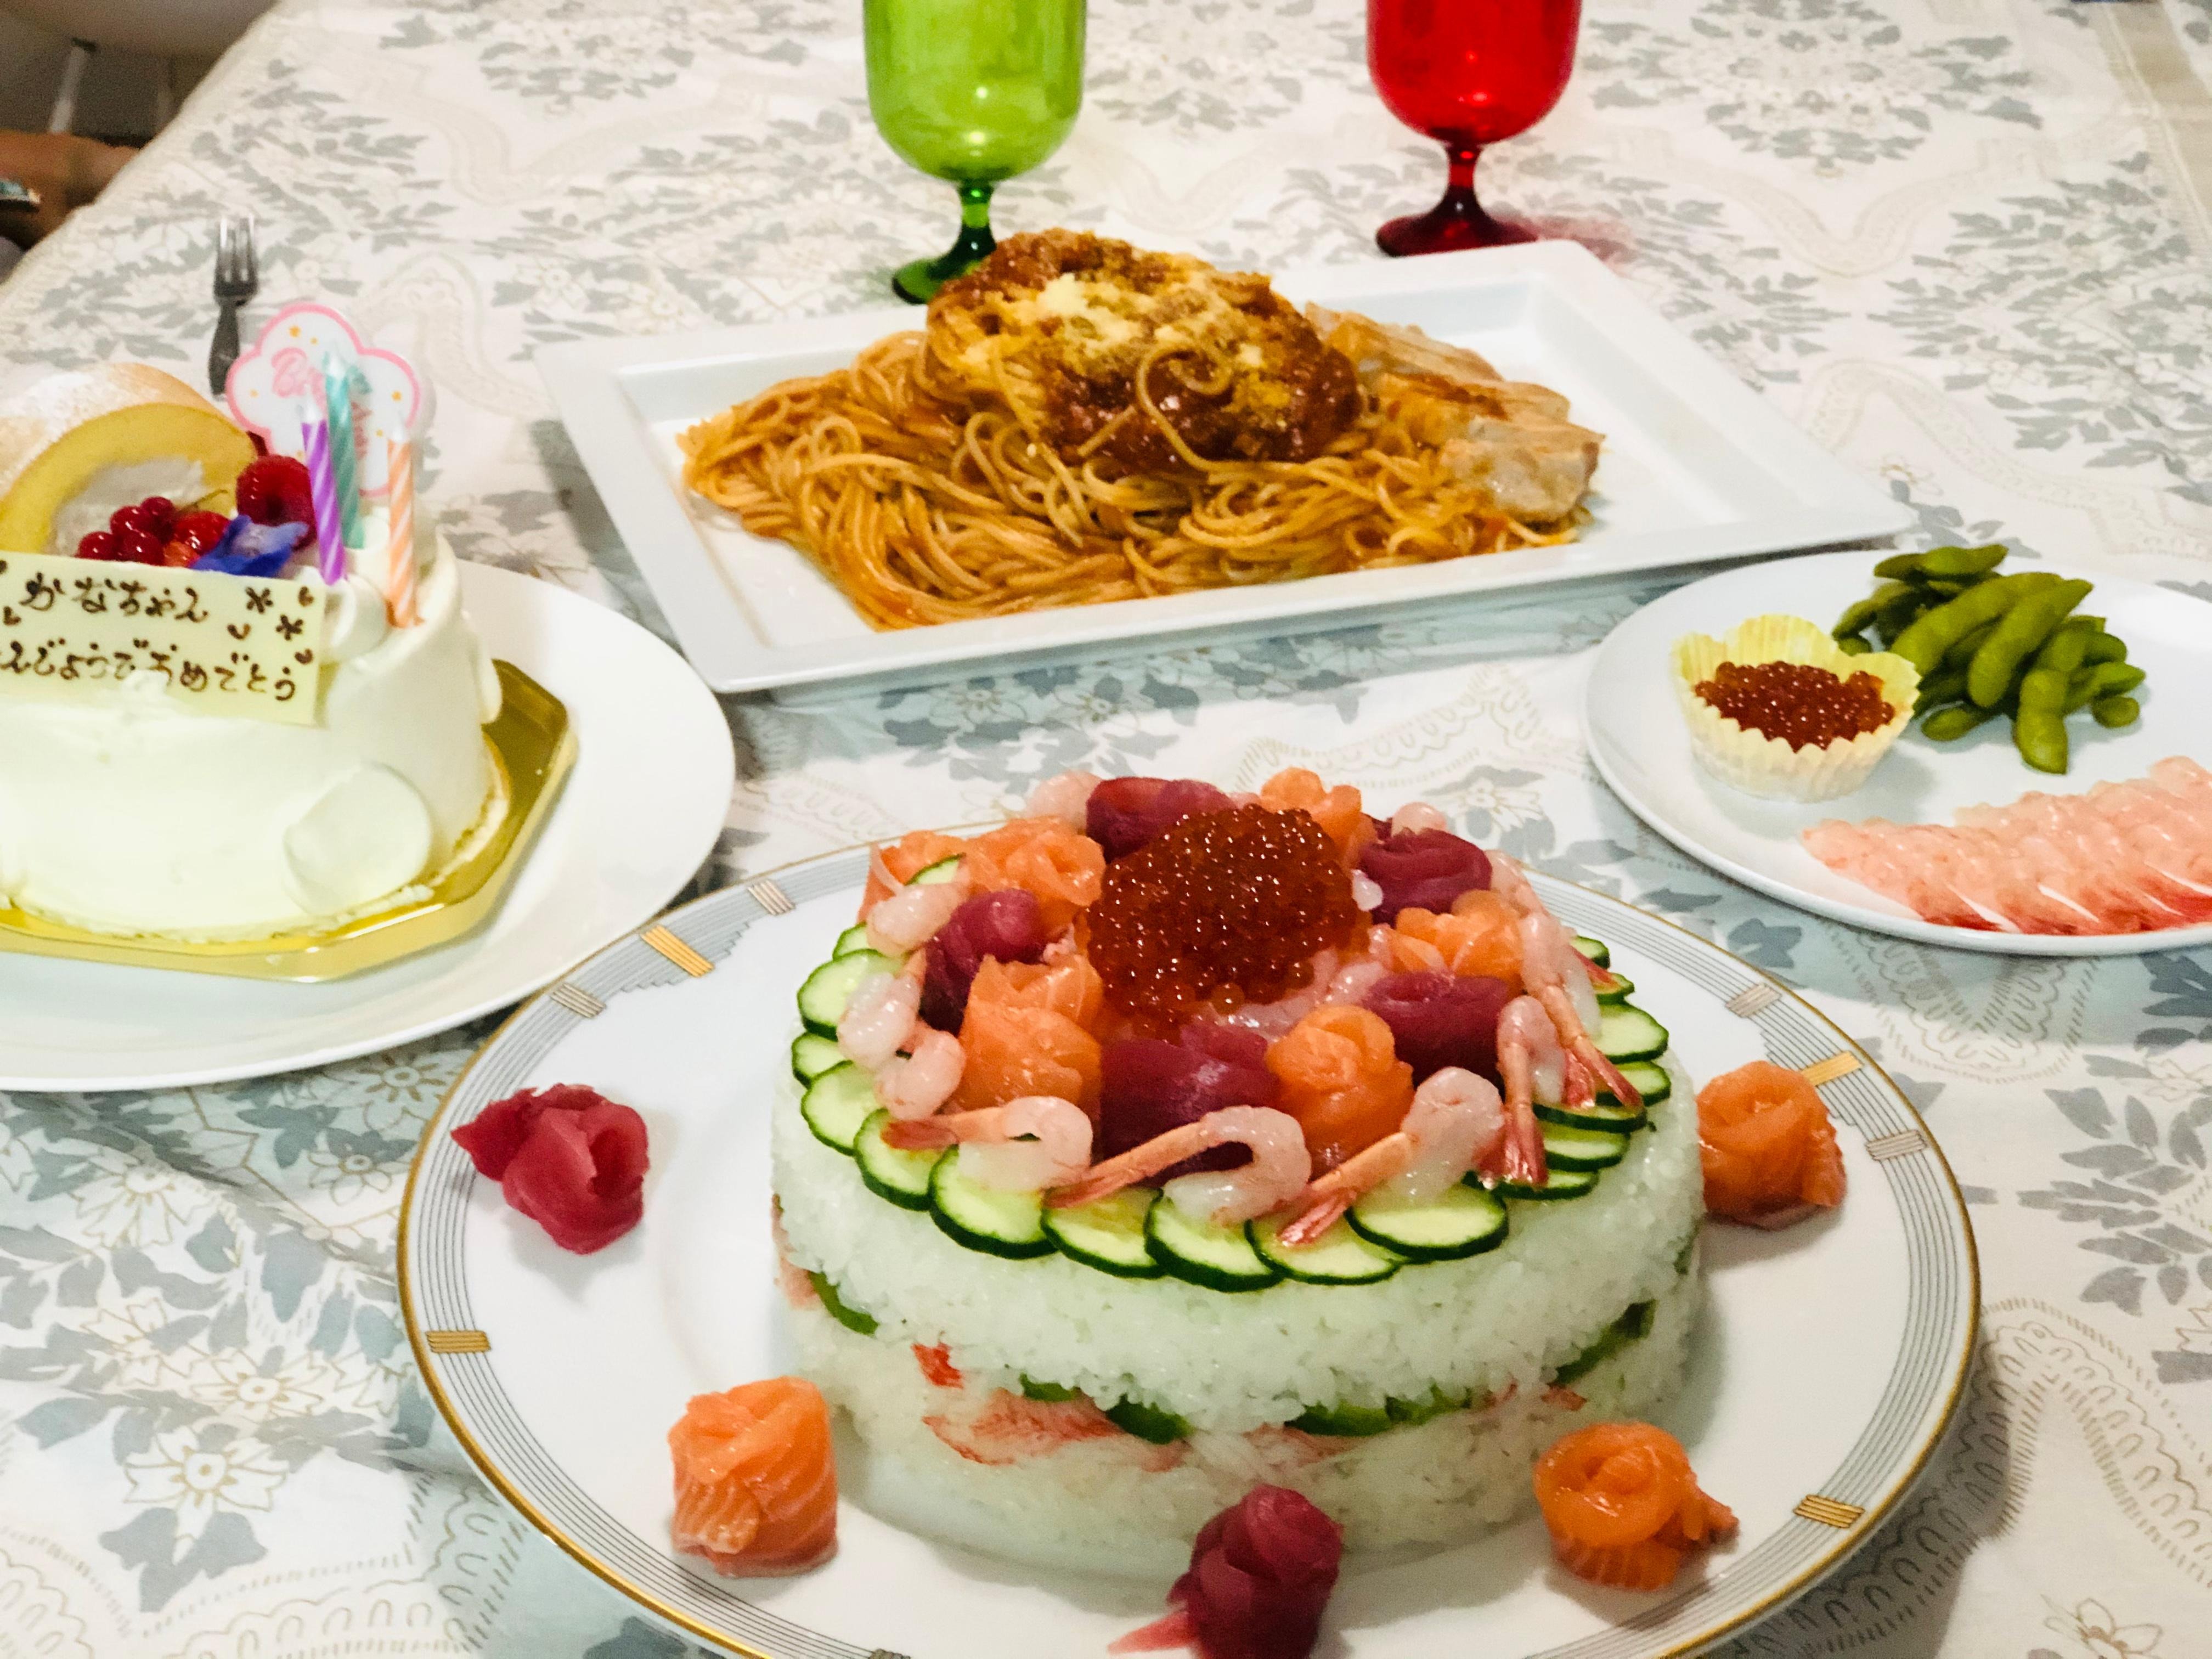 我が家のお祝い寿司ケーキのレシピ 作り方 木谷 京子 料理教室検索サイト クスパ